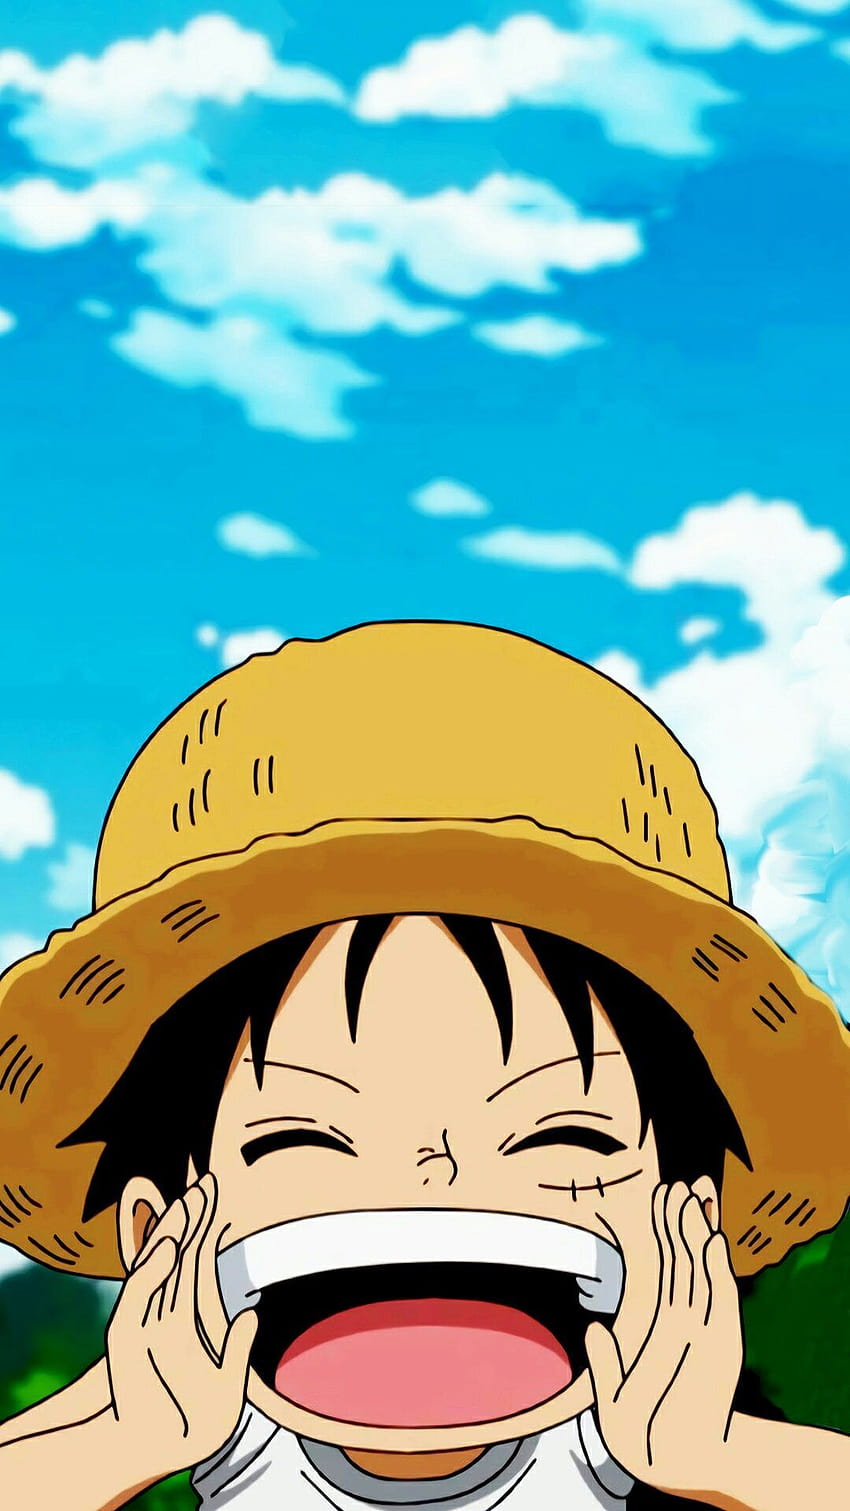 ảnh luffy: Có rất nhiều hình ảnh độc đáo về nhân vật chính Luffy trong bộ anime One Piece. Hãy kiểm tra một số bức ảnh đó để thấy rõ sự khác biệt của chàng hải tặc với vẻ ngoài đáng yêu, cá tính và quyết đoán.